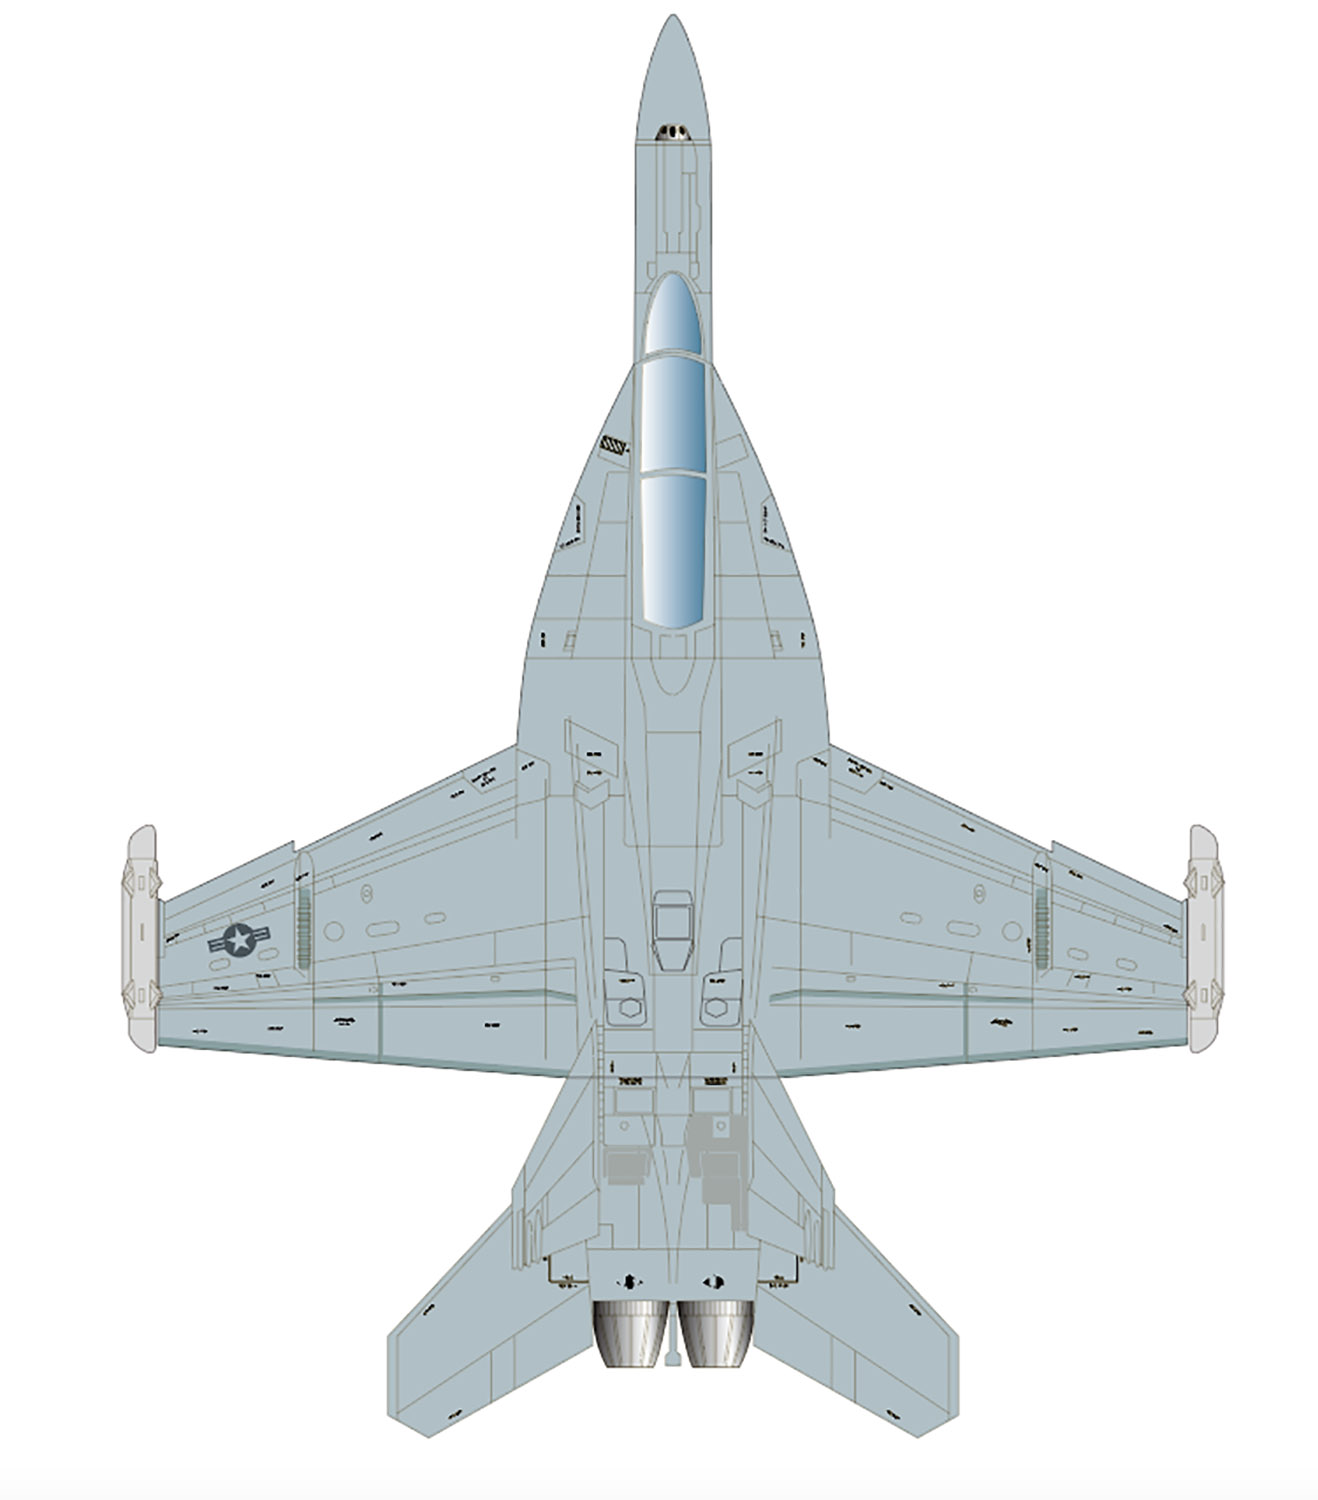 PLATZ/ITALERI 1/48 US NAVY EA-18G Growler "VAQ-141 Shadow hawks"